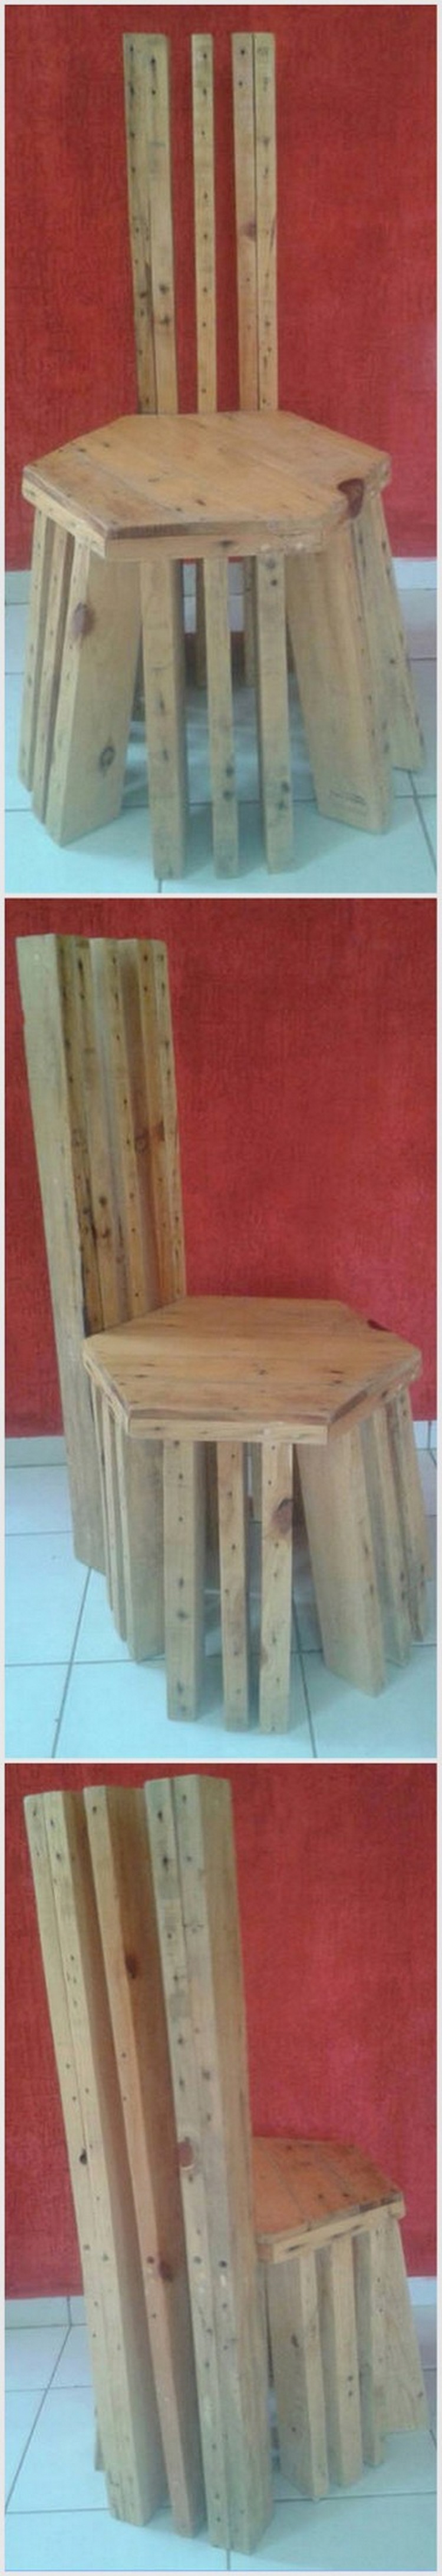 Unique Wooden Pallet Chair